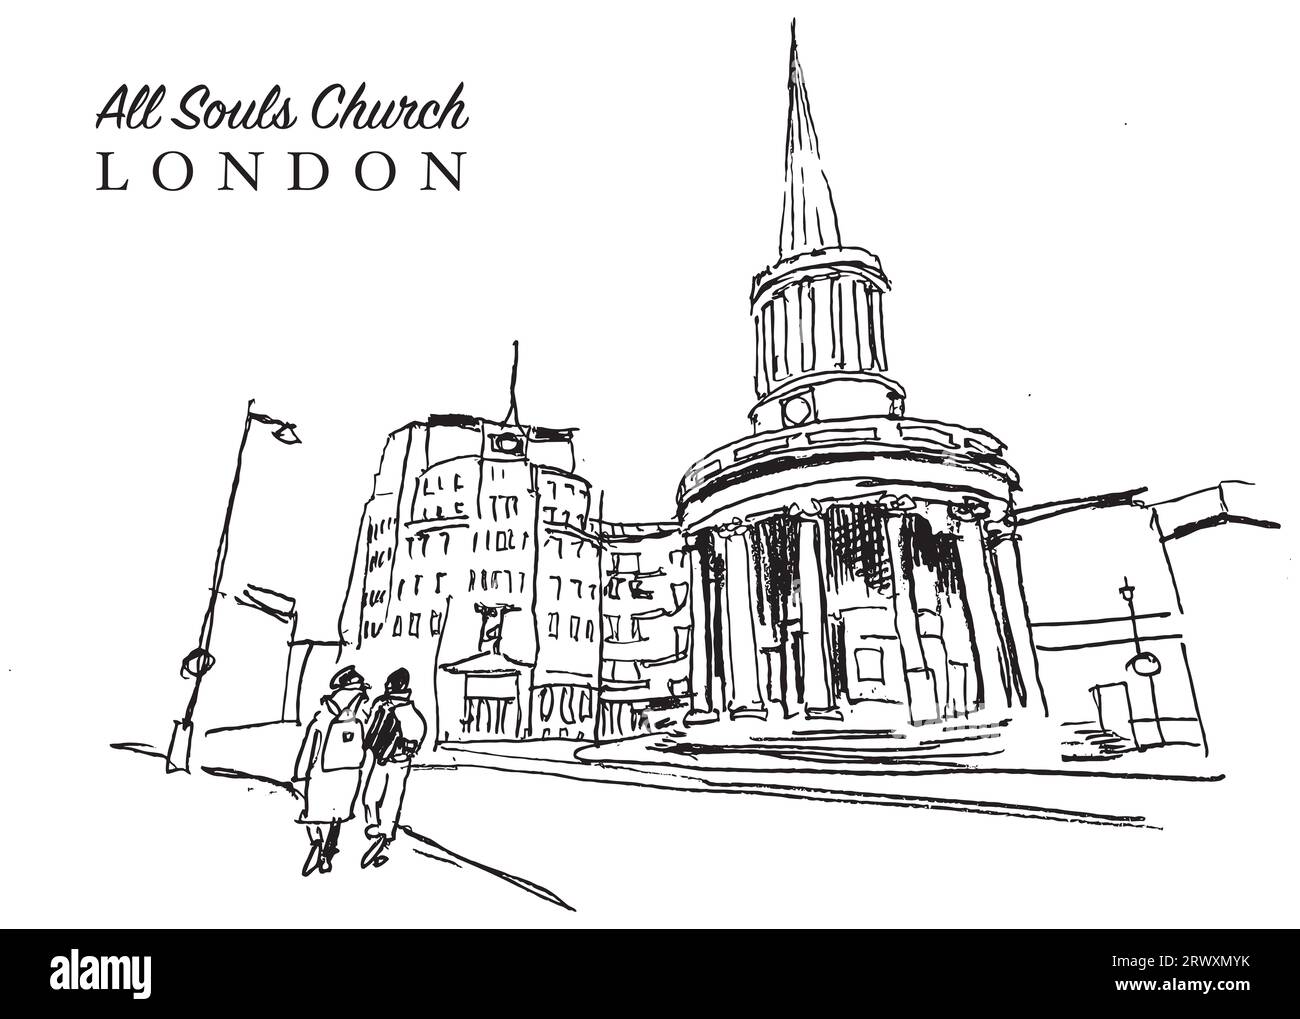 Vector Hand Drawn Sketch Illustration of the All Souls Church ist eine evangelische anglikanische Kirche im Zentrum Londons Stockfoto